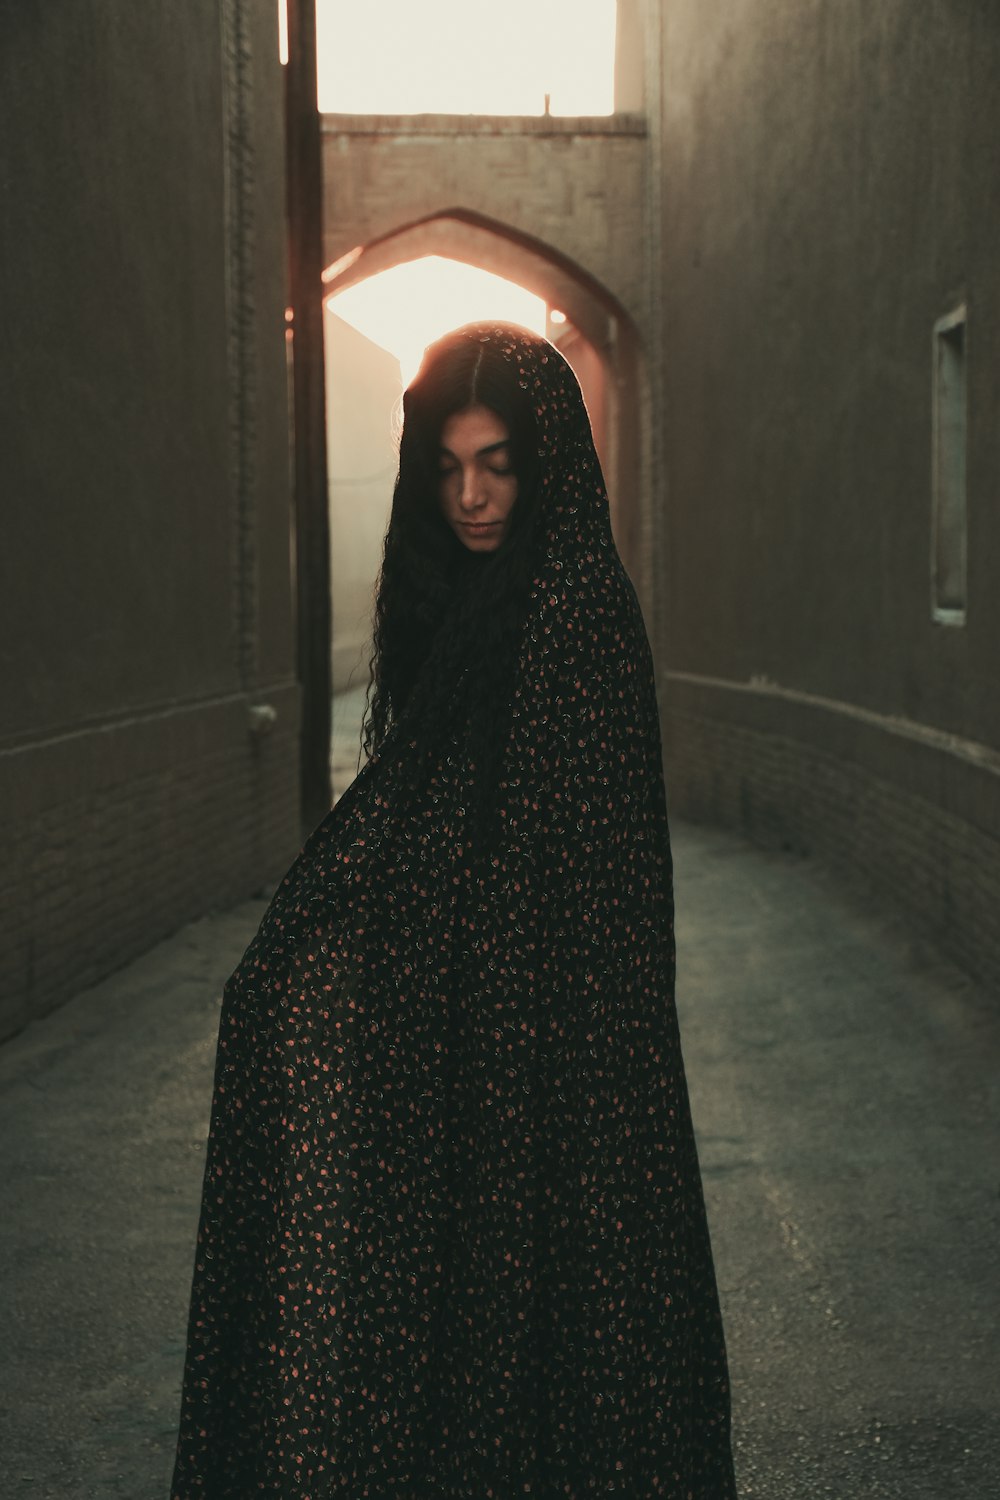 Une femme en robe noire debout dans un tunnel